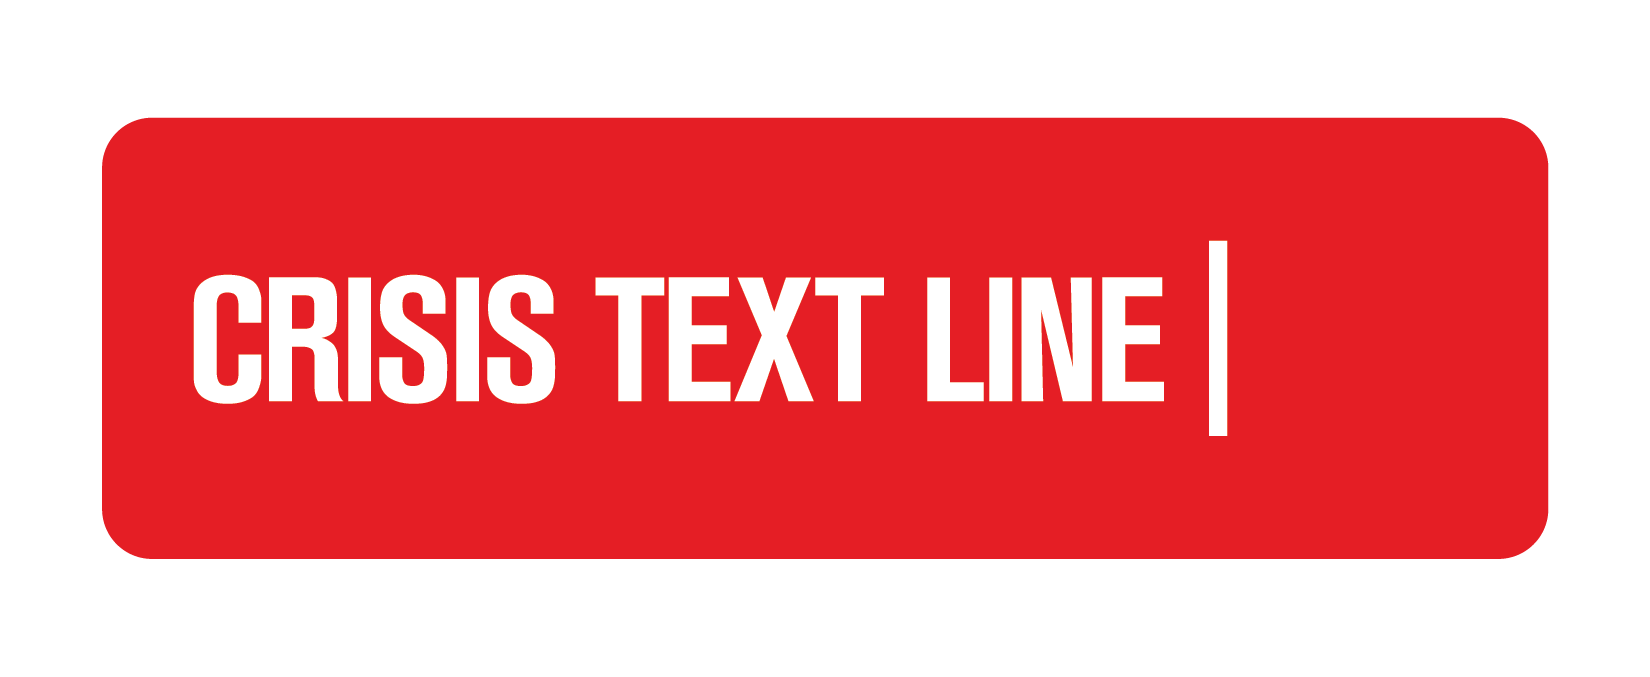 Crisis Text Line Cel